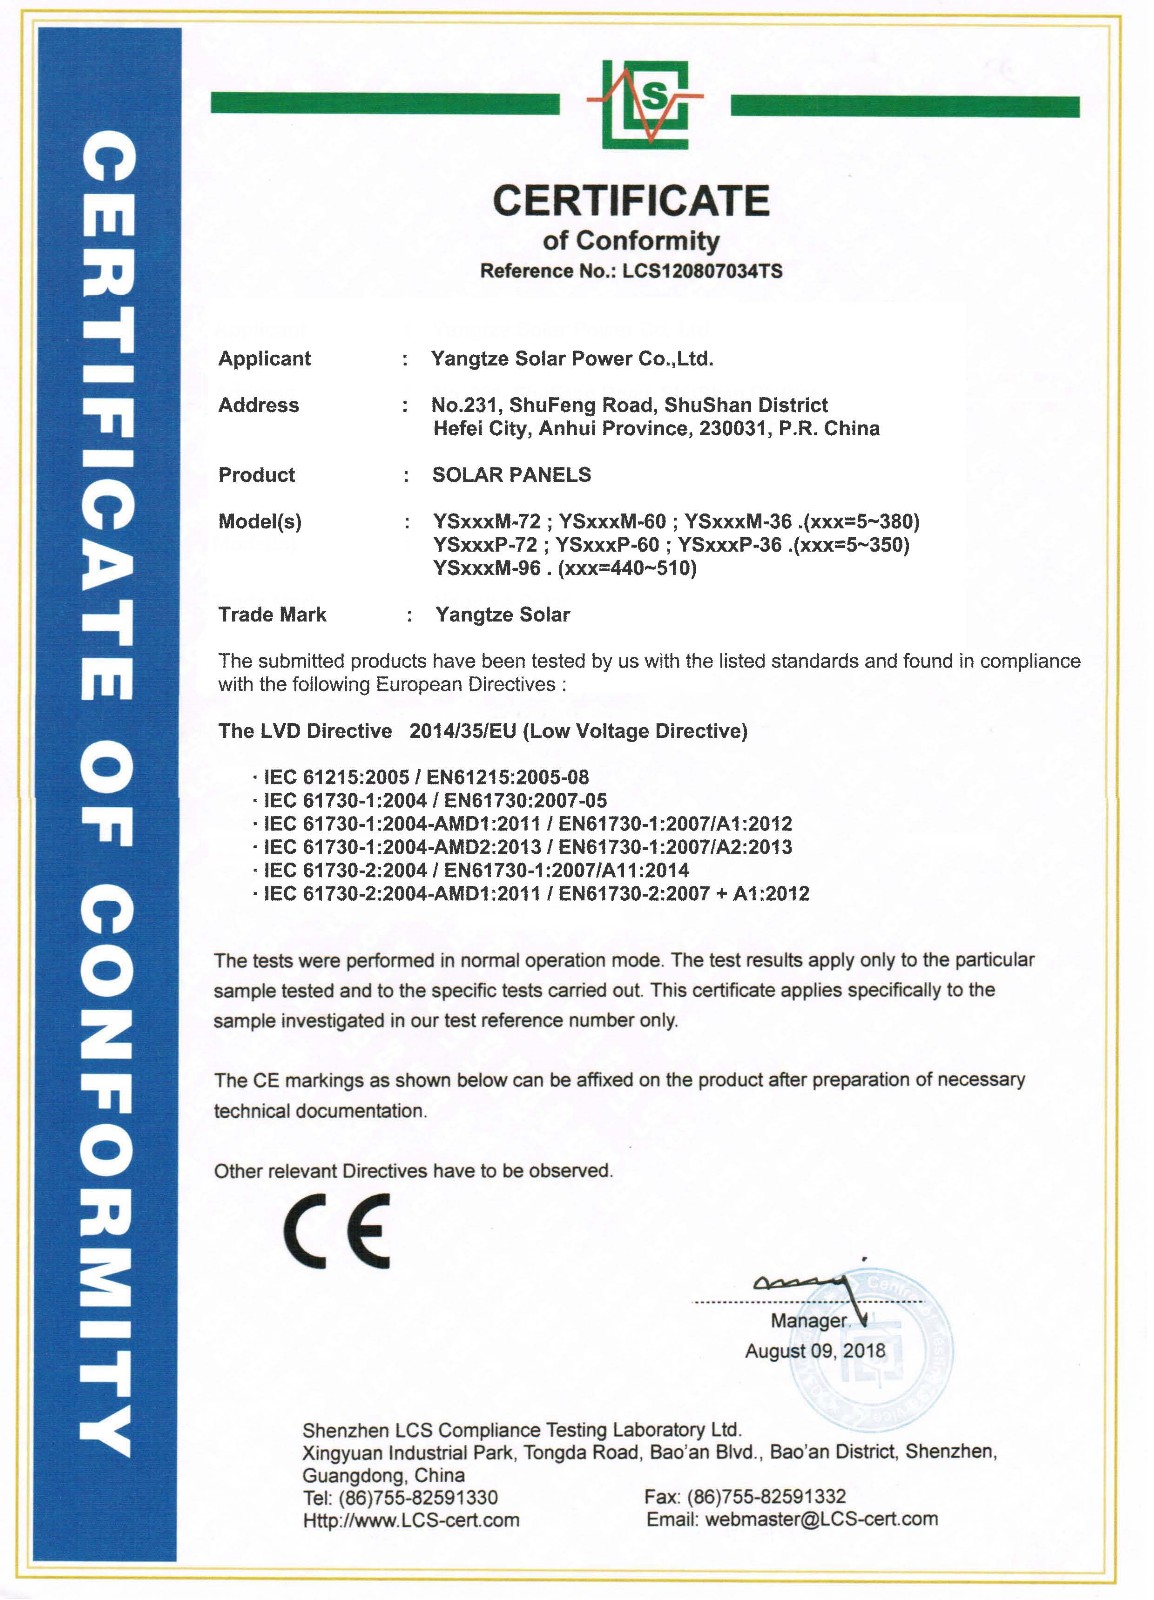 CE certification(510w).jpg